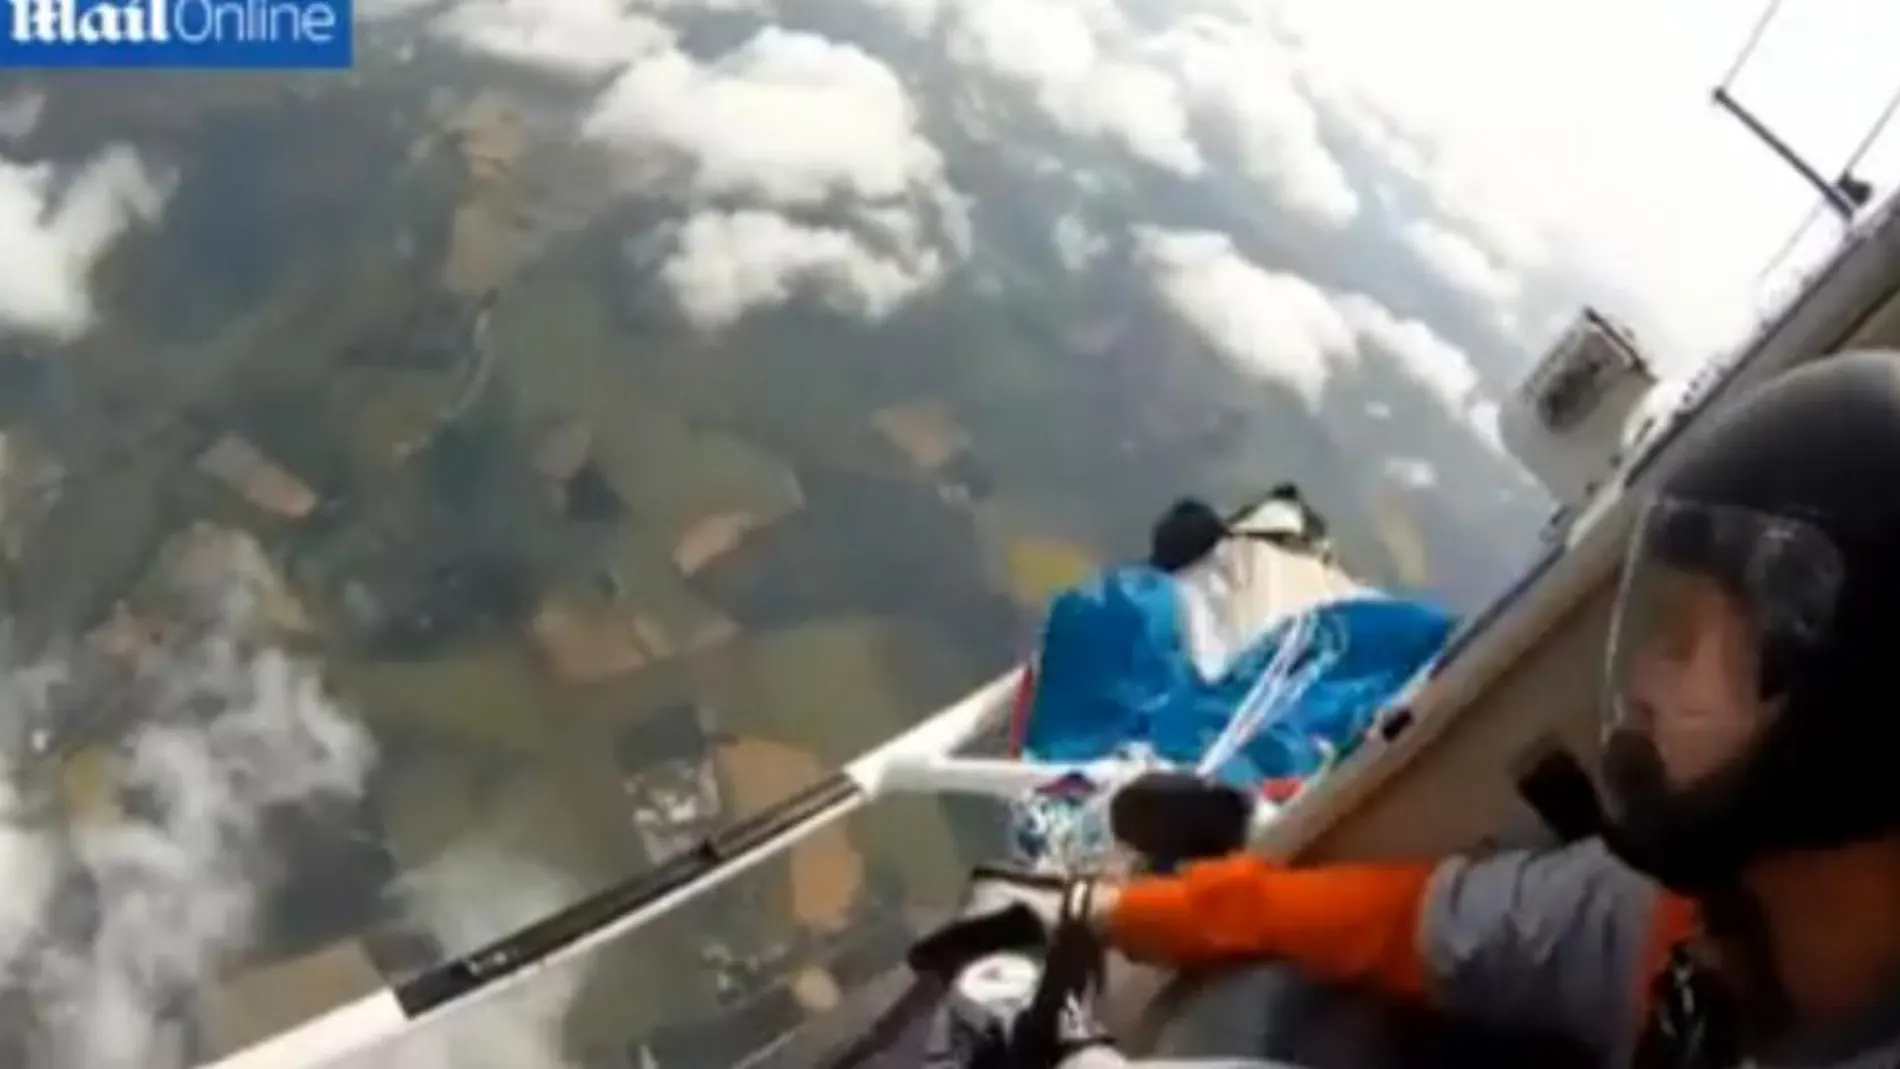 Bajo esta imagen, el vídeo completo de la desesperada secuencia por recuperar el paracaídas